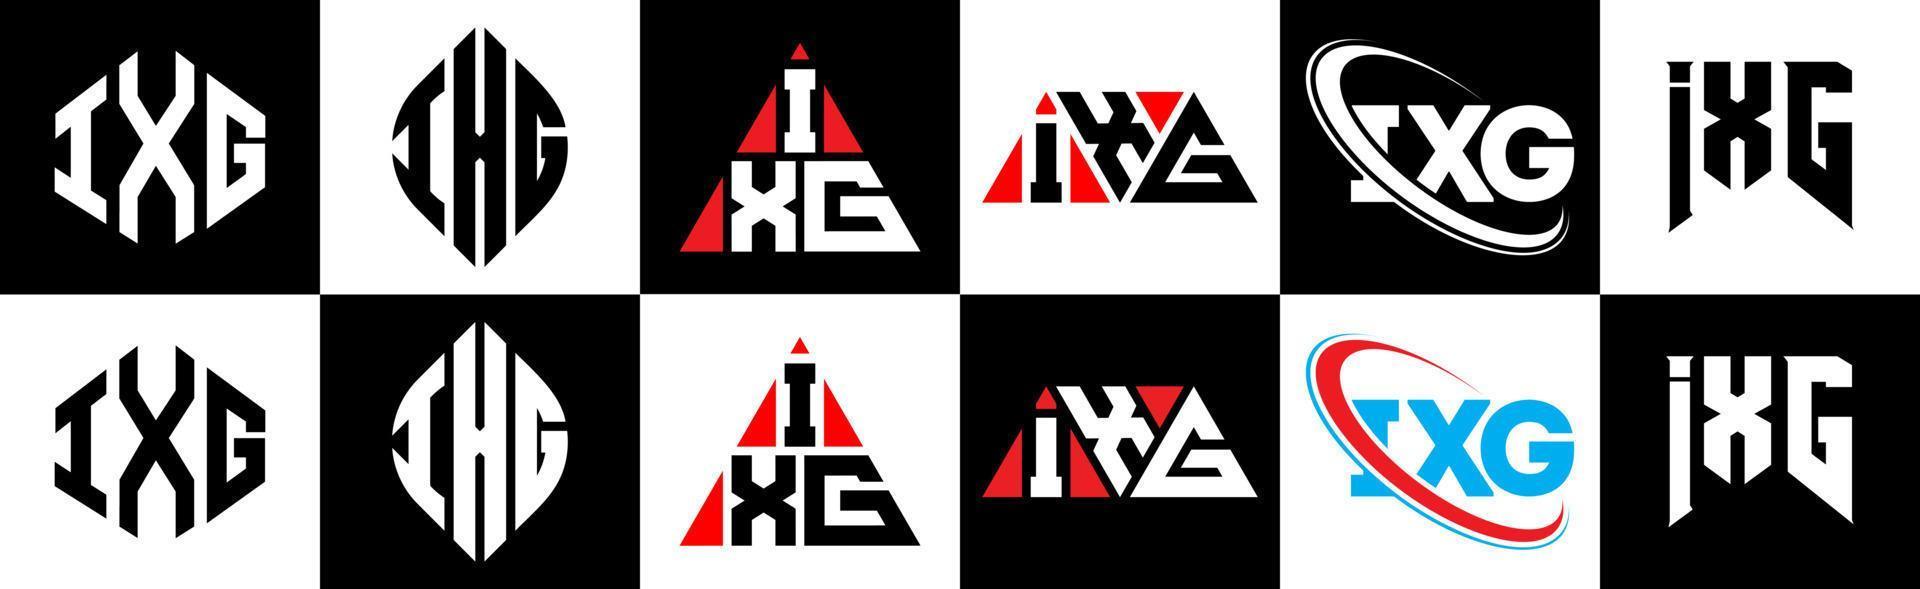 Diseño de logotipo de letra ixg en seis estilos. polígono ixg, círculo, triángulo, hexágono, estilo plano y simple con logotipo de letra de variación de color blanco y negro en una mesa de trabajo. logotipo minimalista y clásico de ixg vector